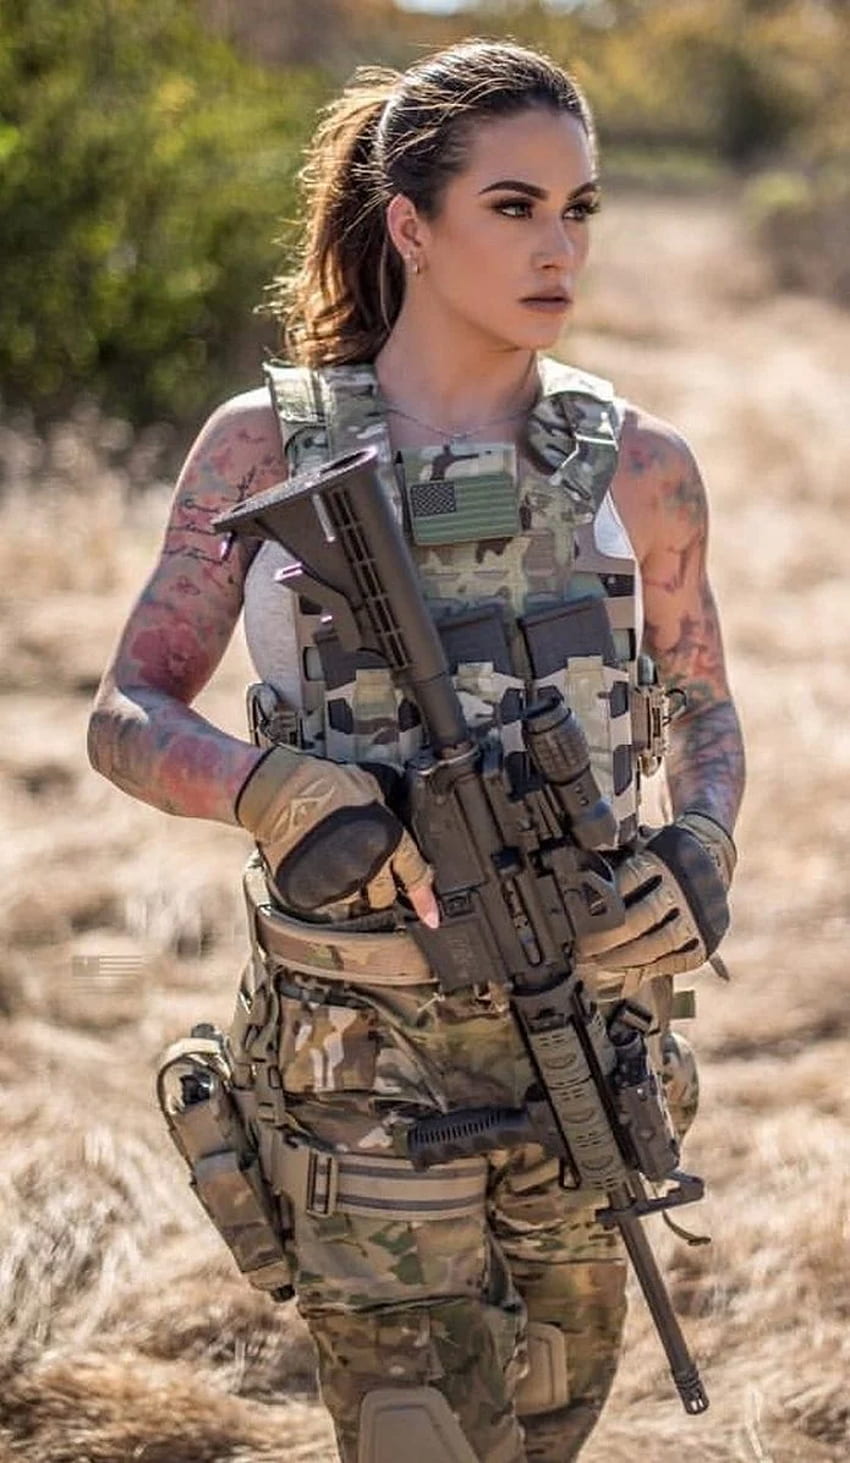 Garotas Militares Gostosas - Garotas e Armas - Garotas com Armas Papel de parede de celular HD